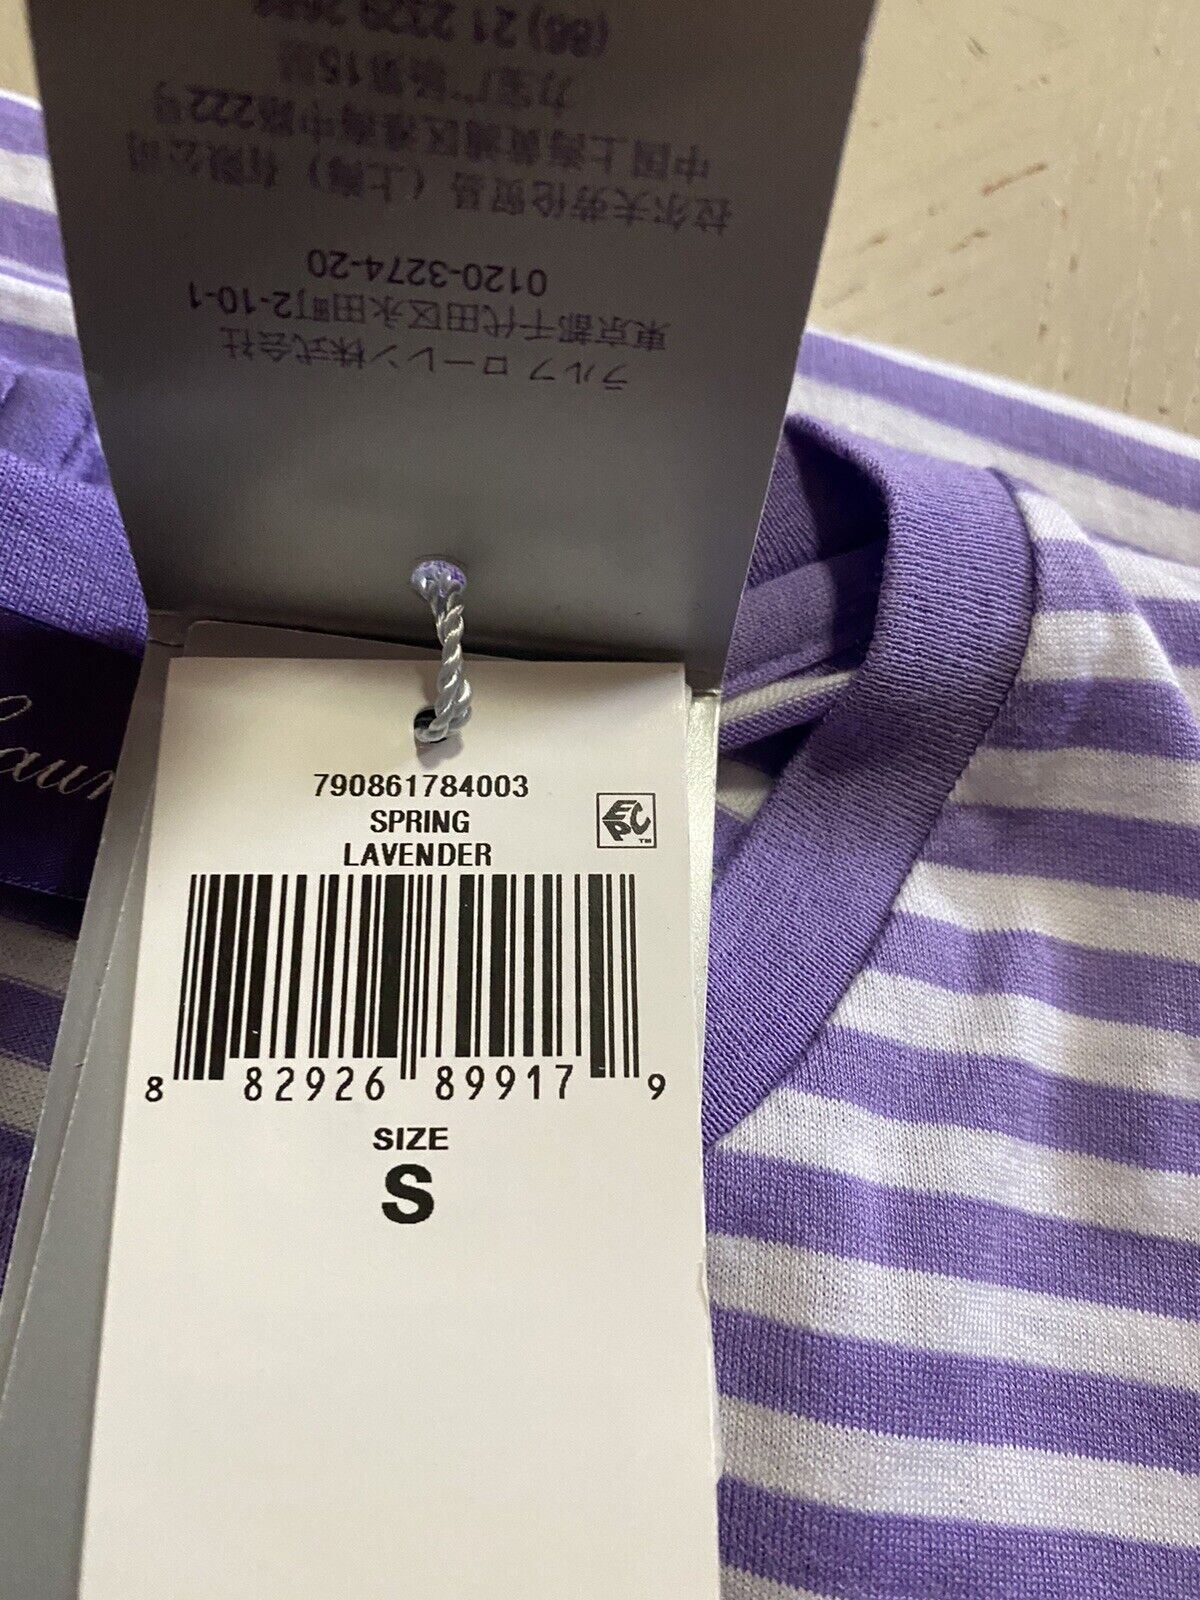 Neu mit Etikett: Ralph Lauren Purple Label Herren-Baumwoll-T-Shirt, Lila/Weiß, S, Italien